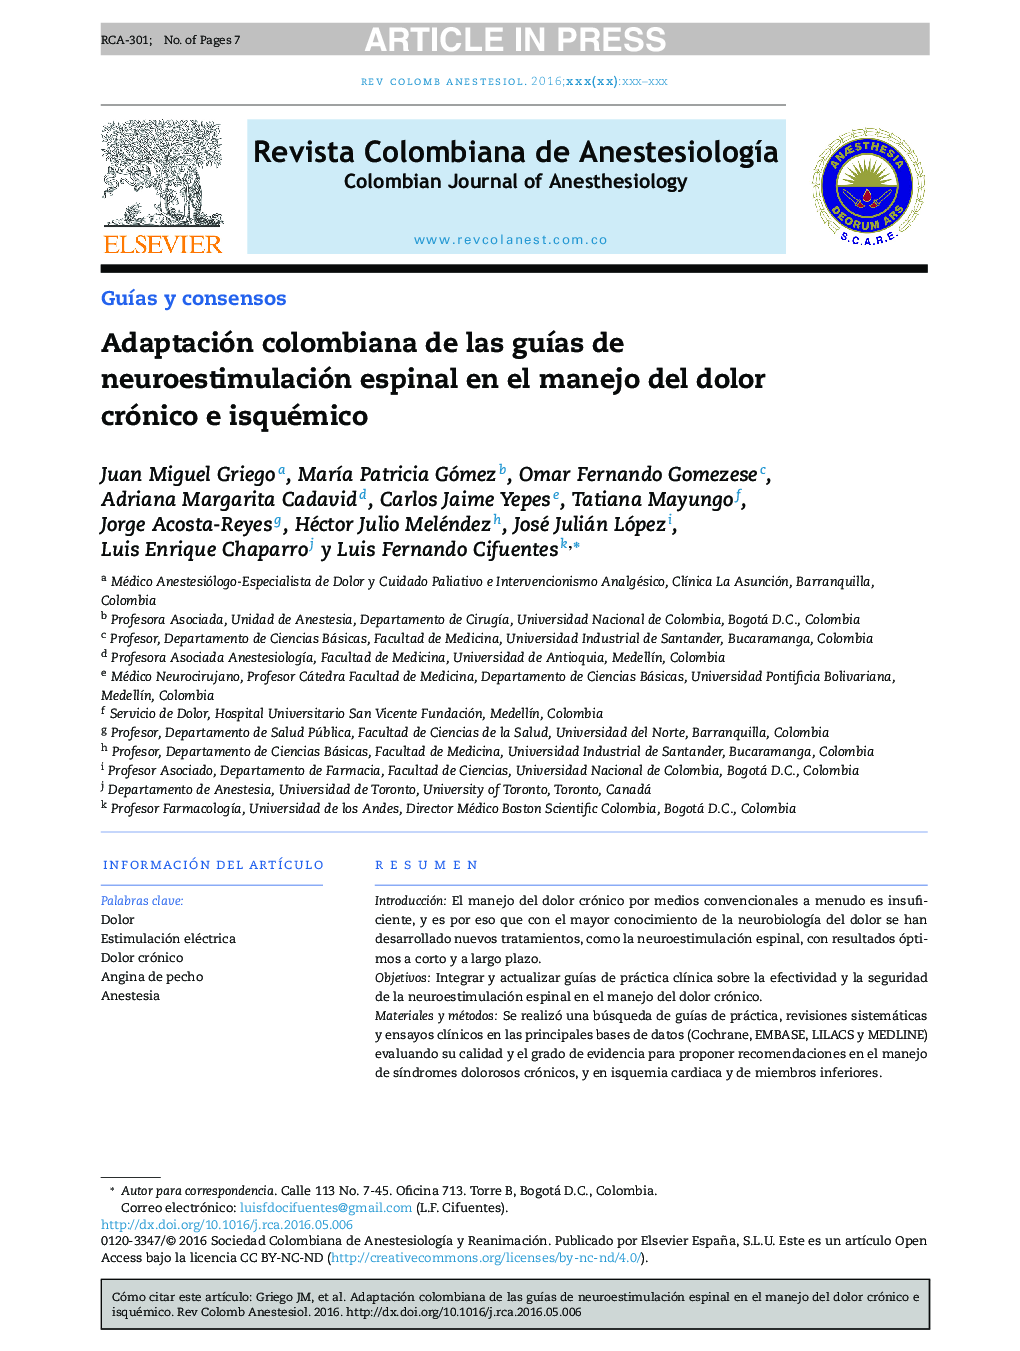 Adaptación colombiana de las guÃ­as de neuroestimulación espinal en el manejo del dolor crónico e isquémico